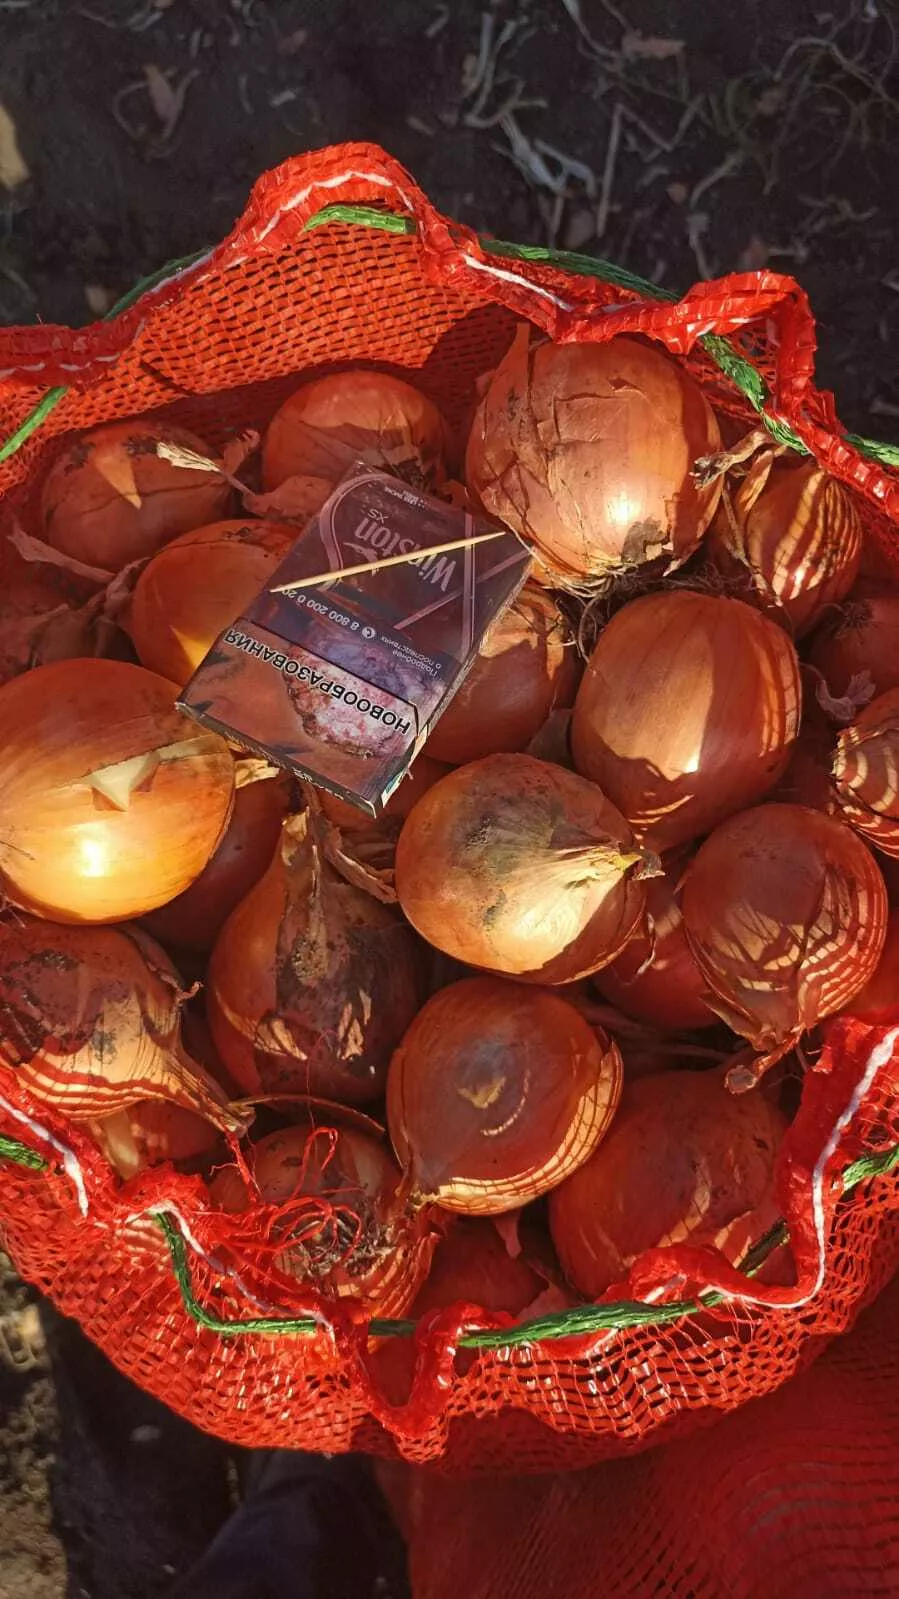 лук репчатый свежий пр-во рф,под заказ в Республике Беларусь 2